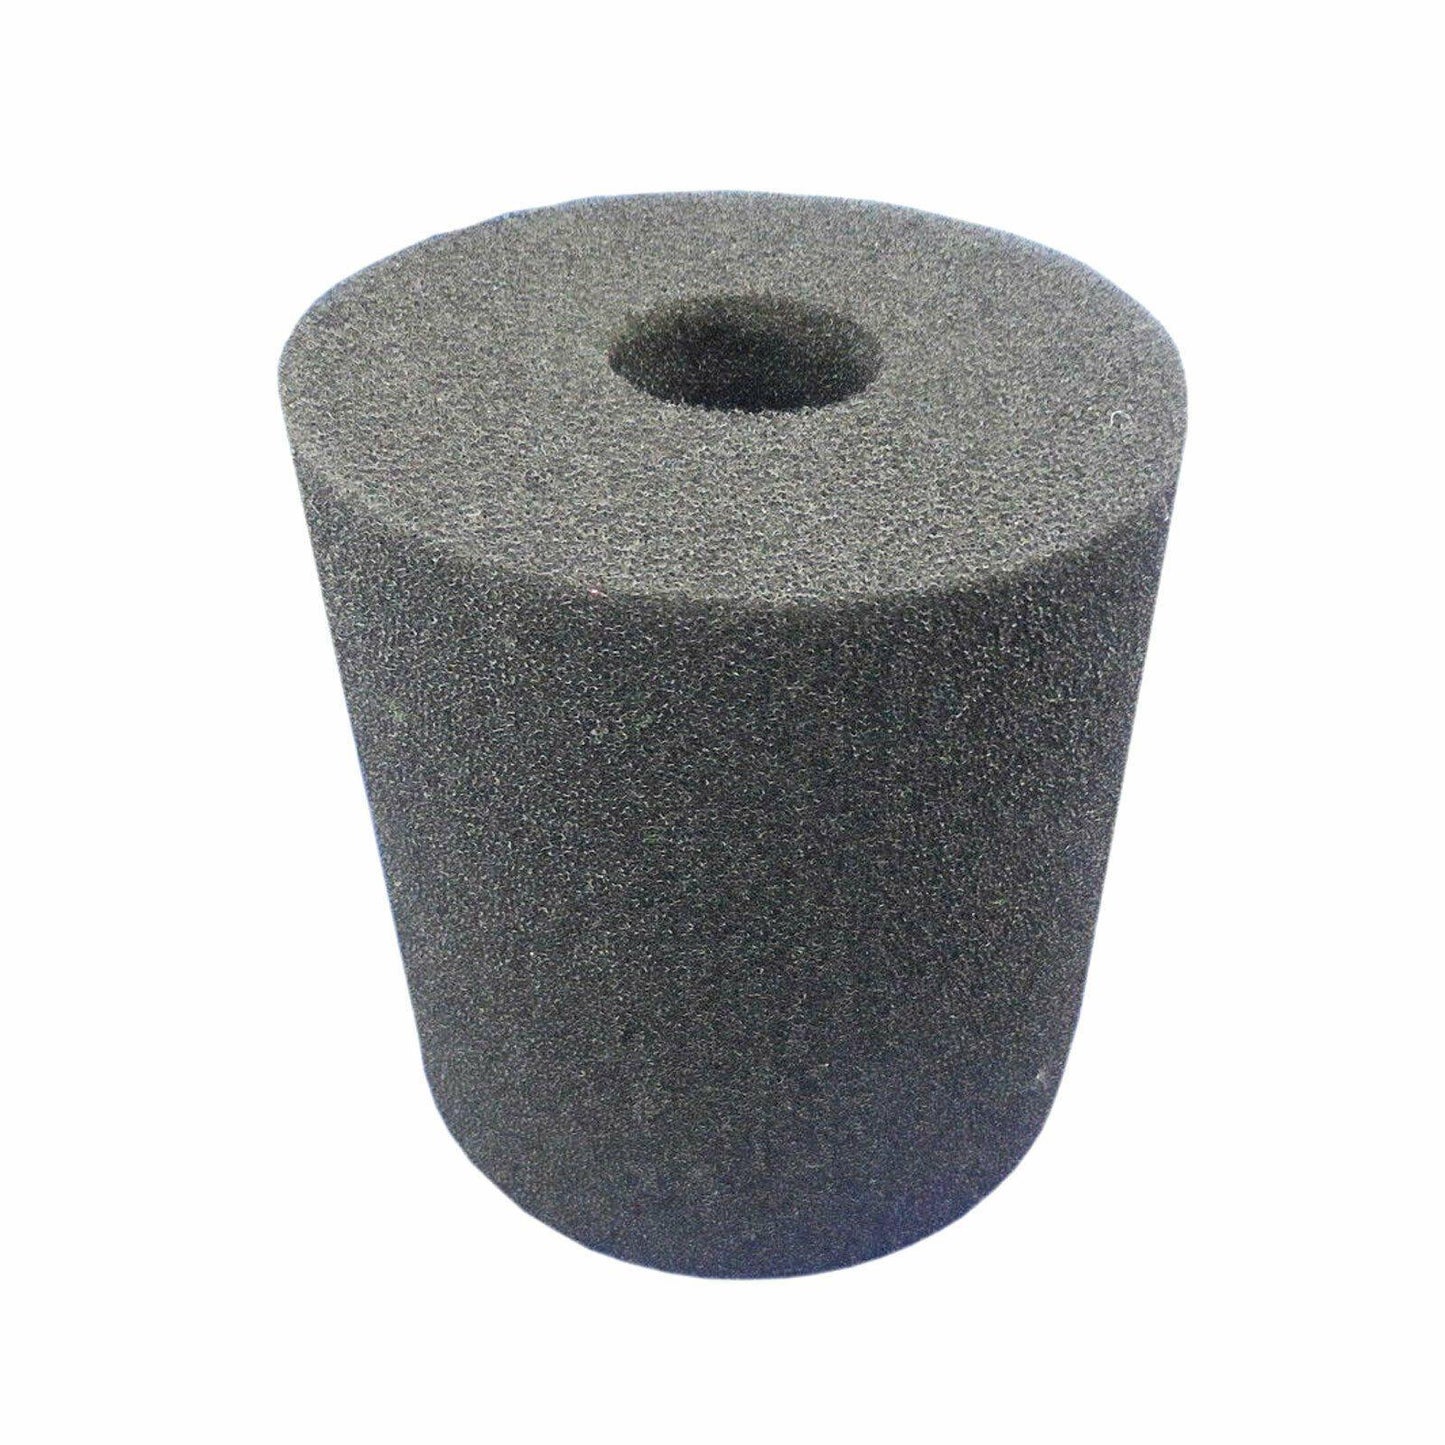 Washable Internal Sponge Foam Filter For Hills DV1 DV2 HCV1200 Ducted Cleaner Sparesbarn